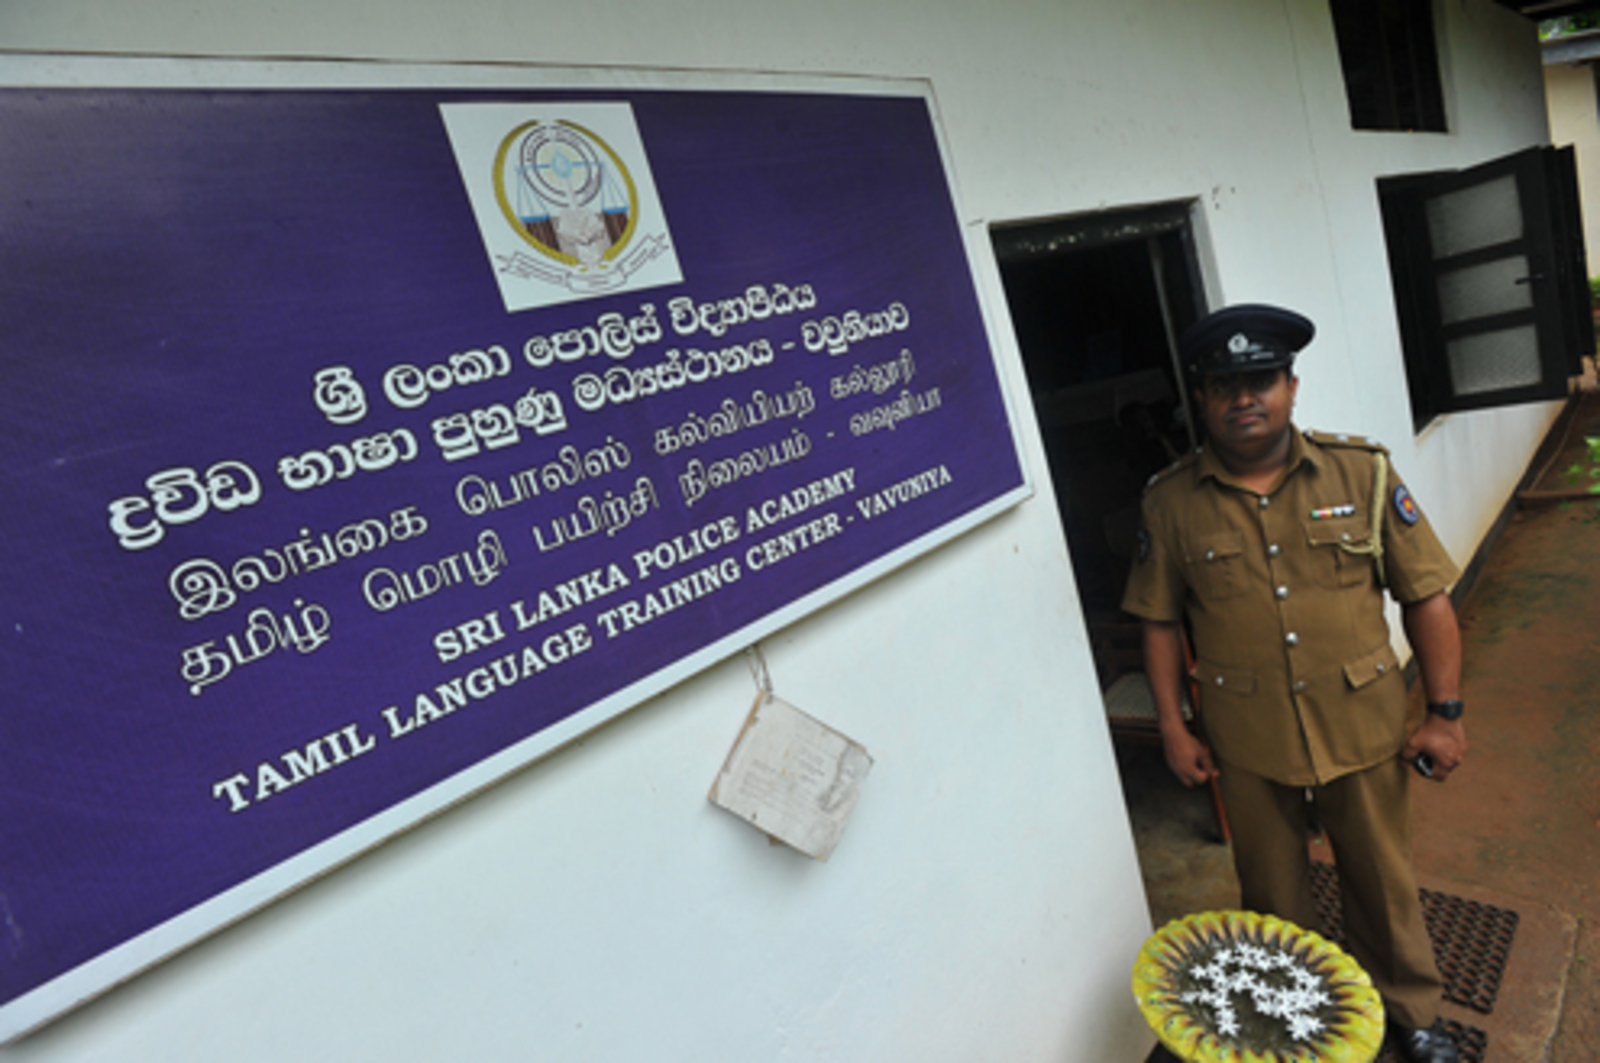 Tamil Language Training at In-service Institute